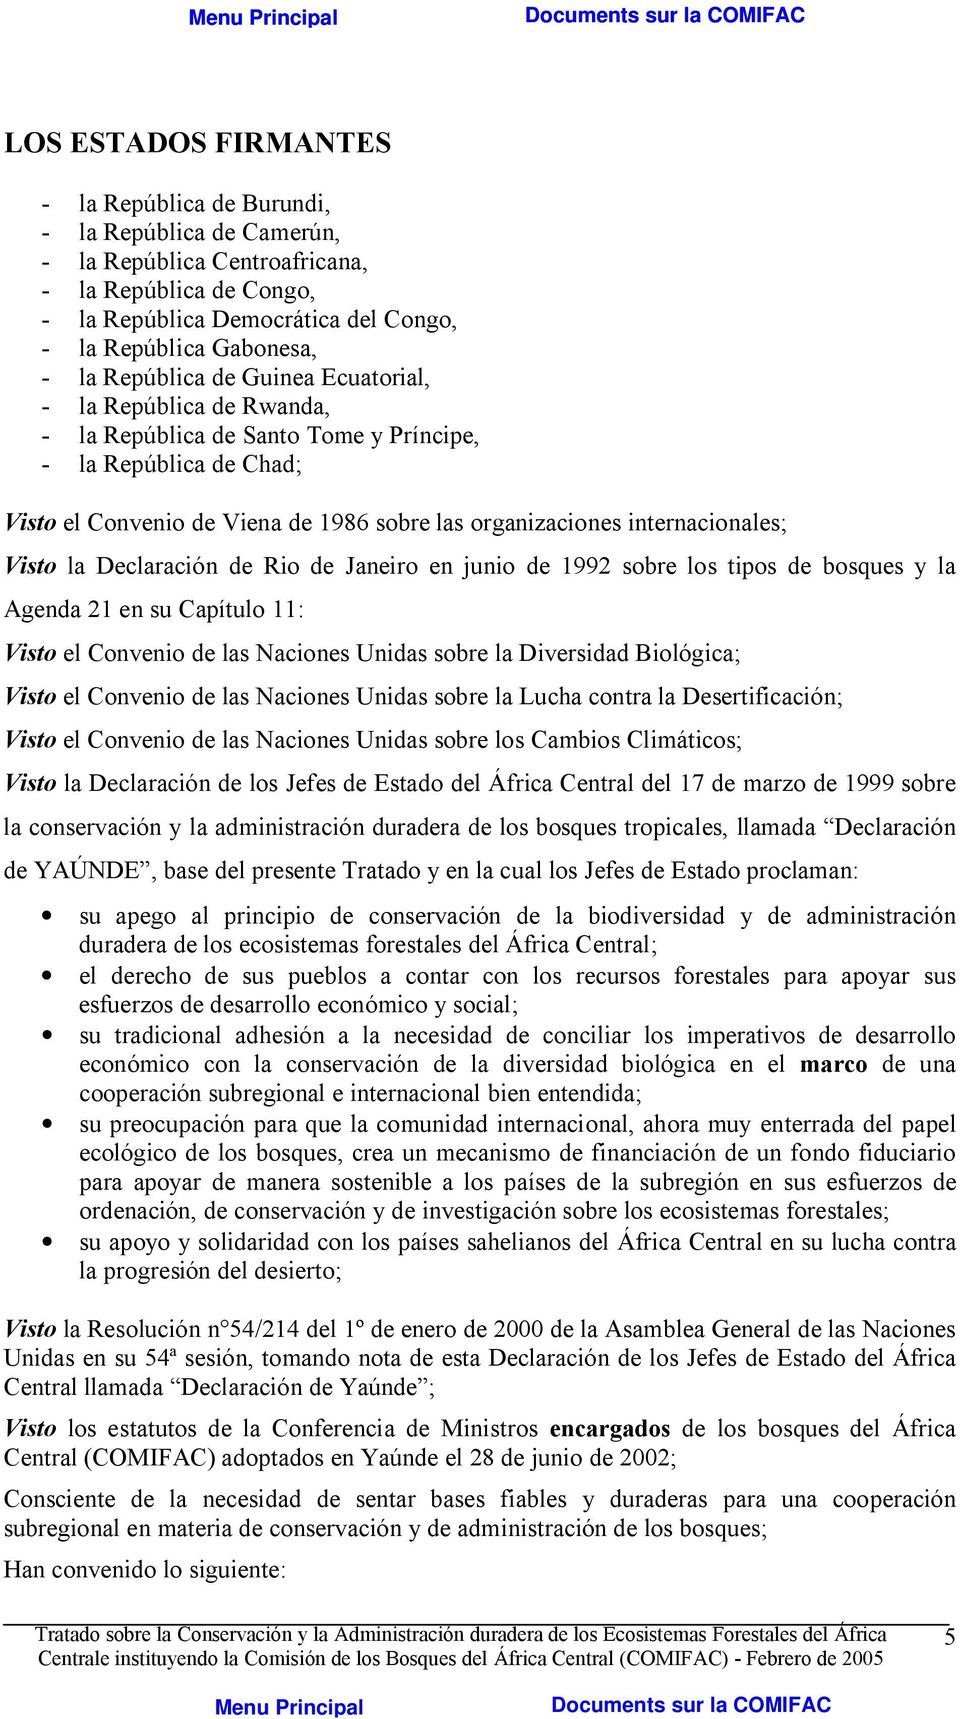 Visto la Declaración de Rio de Janeiro en junio de 1992 sobre los tipos de bosques y la Agenda 21 en su Capítulo 11: Visto el Convenio de las Naciones Unidas sobre la Diversidad Biológica; Visto el